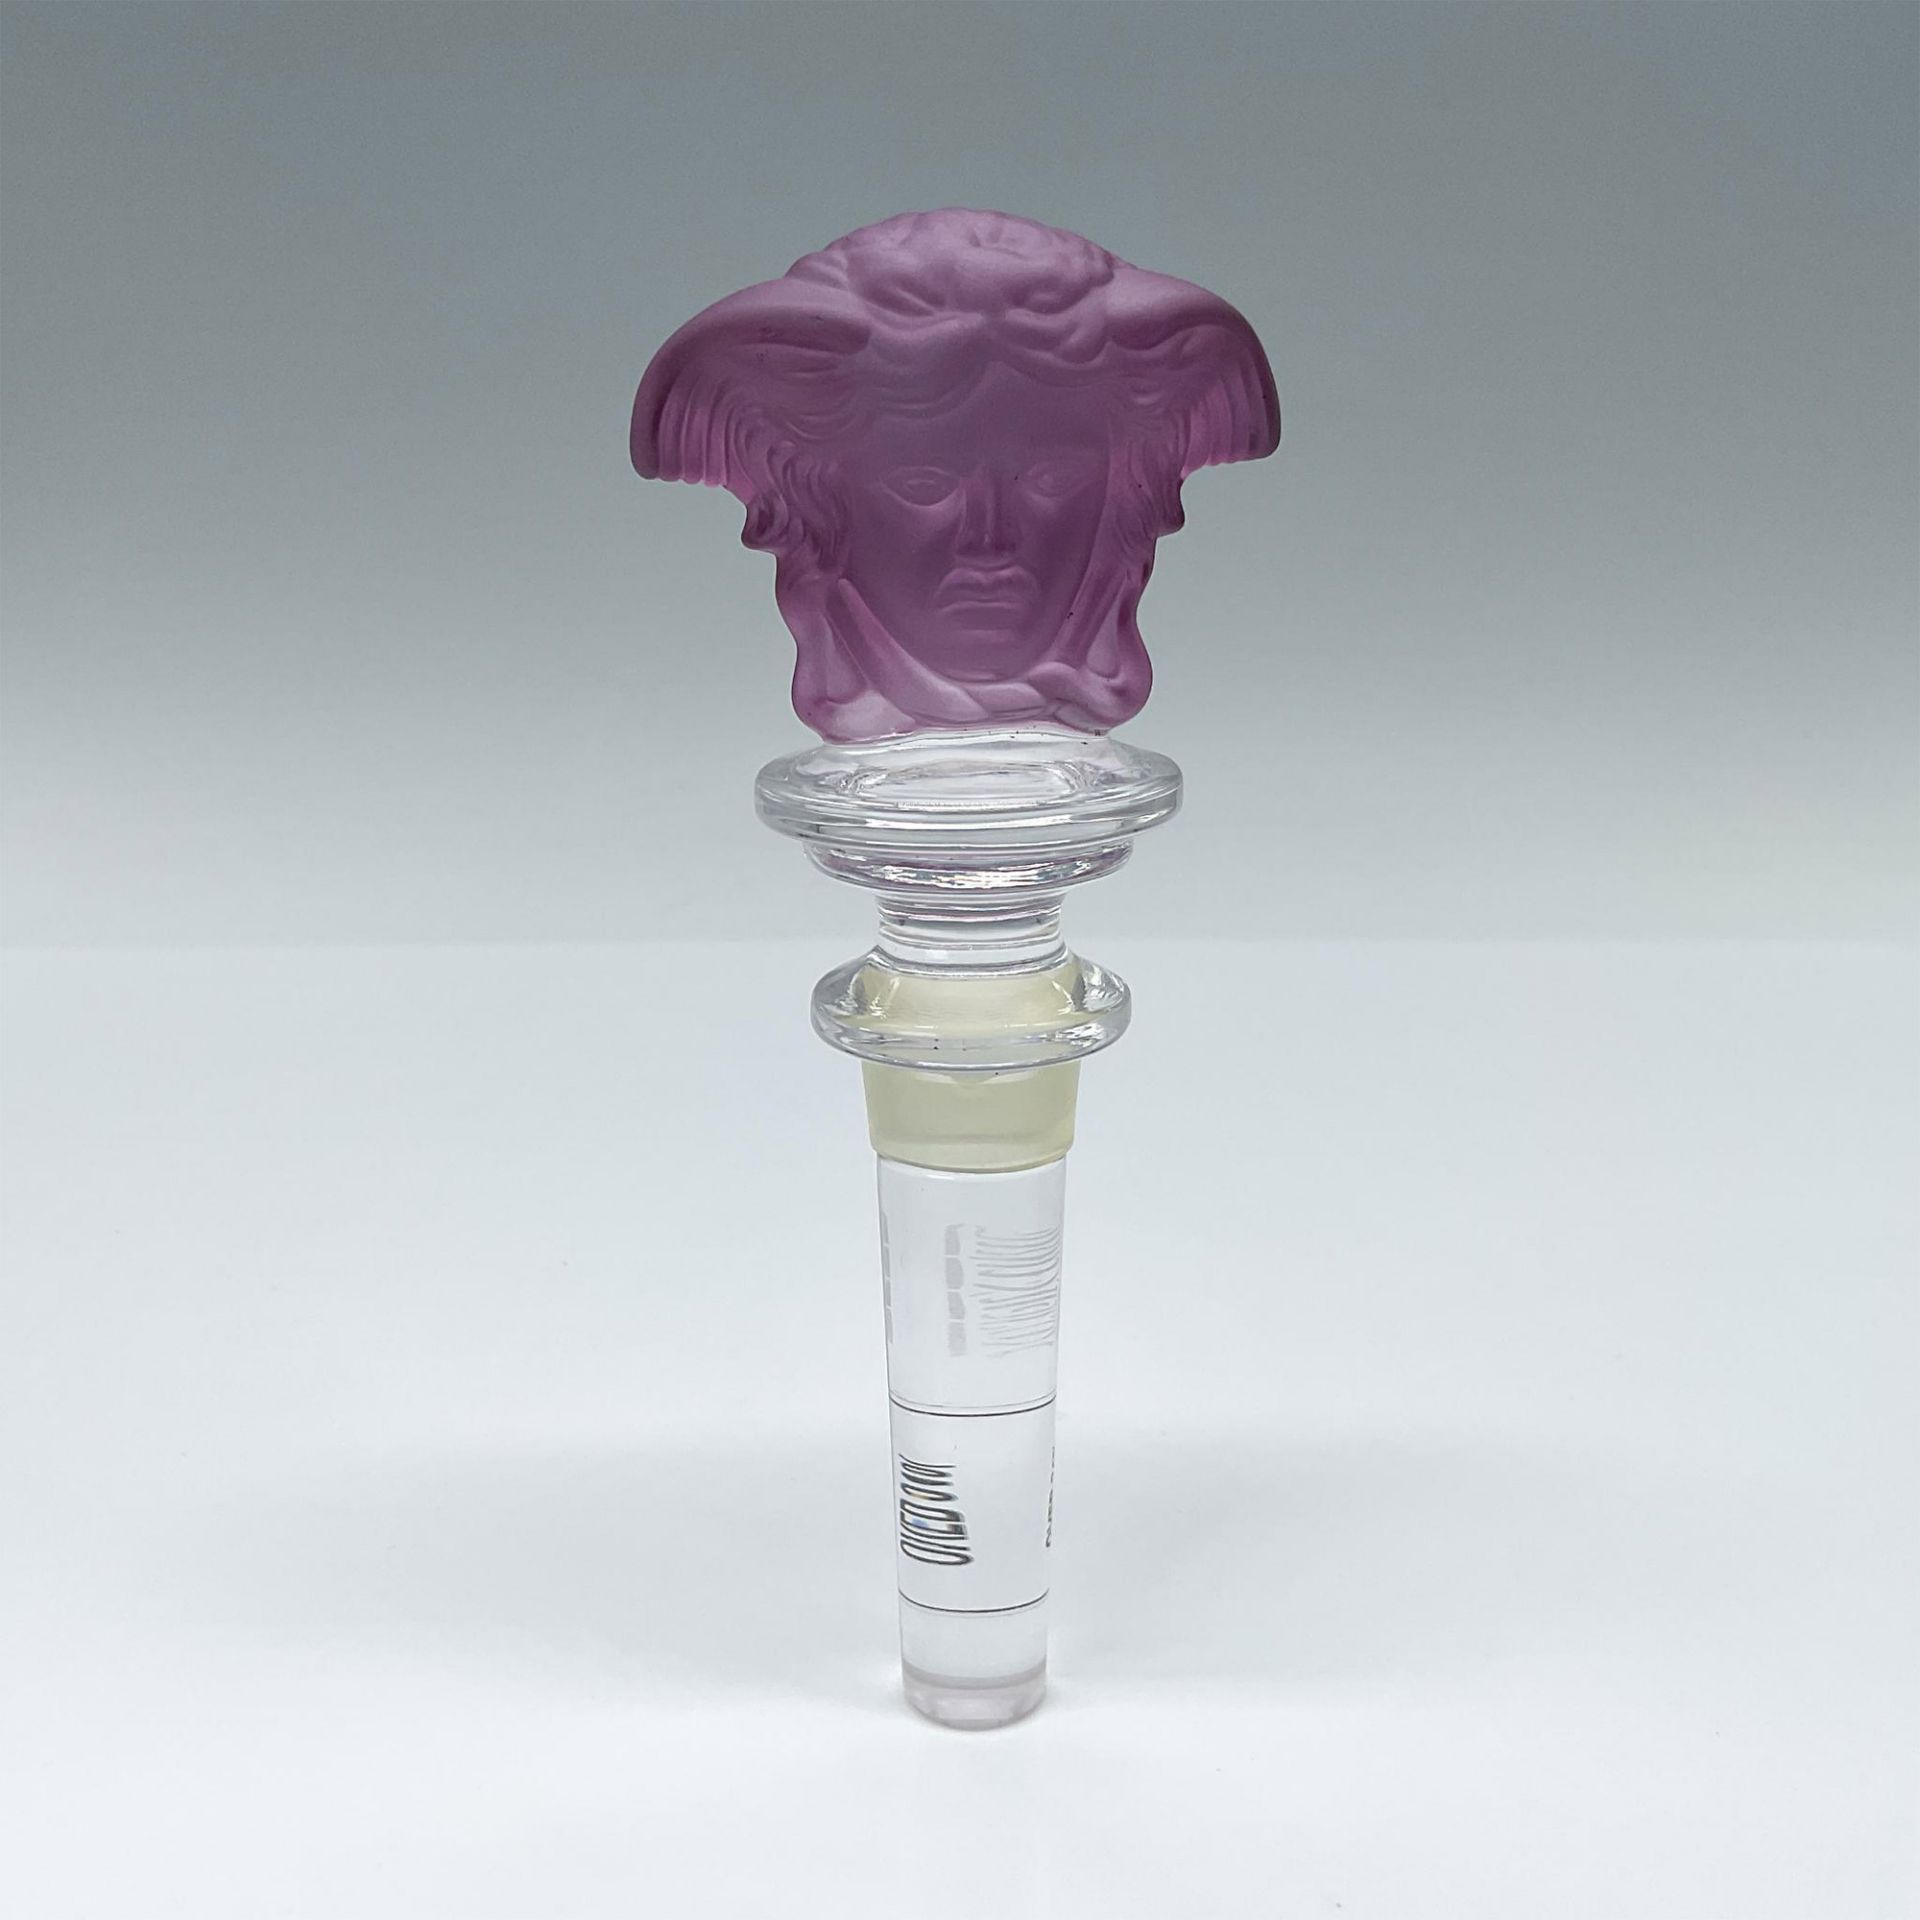 Rosenthal Versace Medusa Head Bottle Stopper, Purple